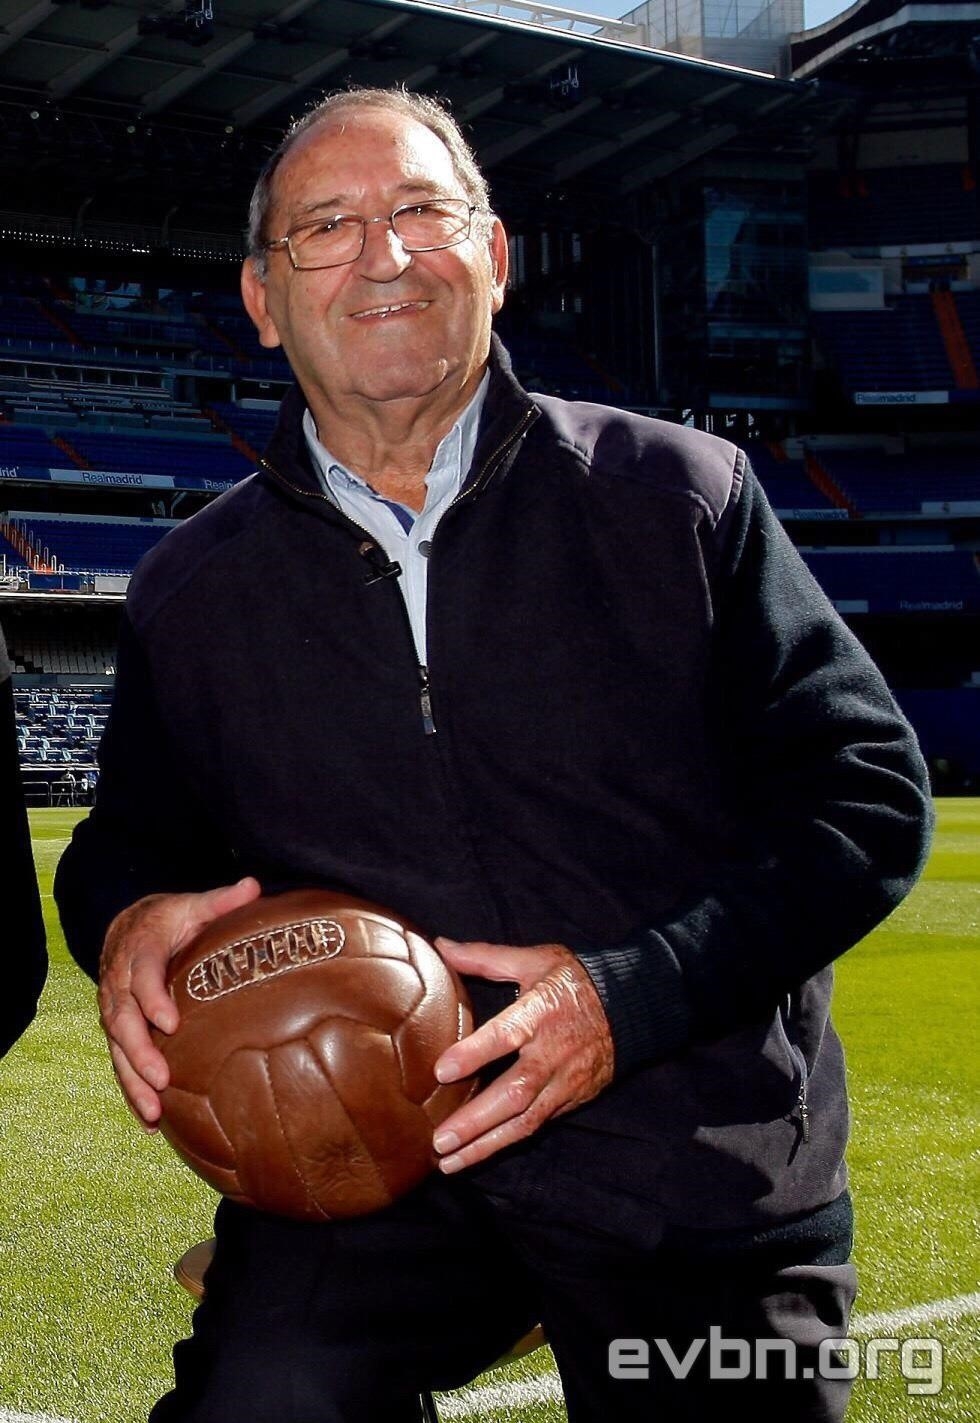 Francisco Gento López (1953-1971) là một cầu thủ bóng đá người Tây Ban Nha, được biết đến như là một trong những cầu thủ thành công nhất của Real Madrid, với 12 chức vô địch quốc gia và 6 danh hiệu Champions League trong suốt sự nghiệp của mình.